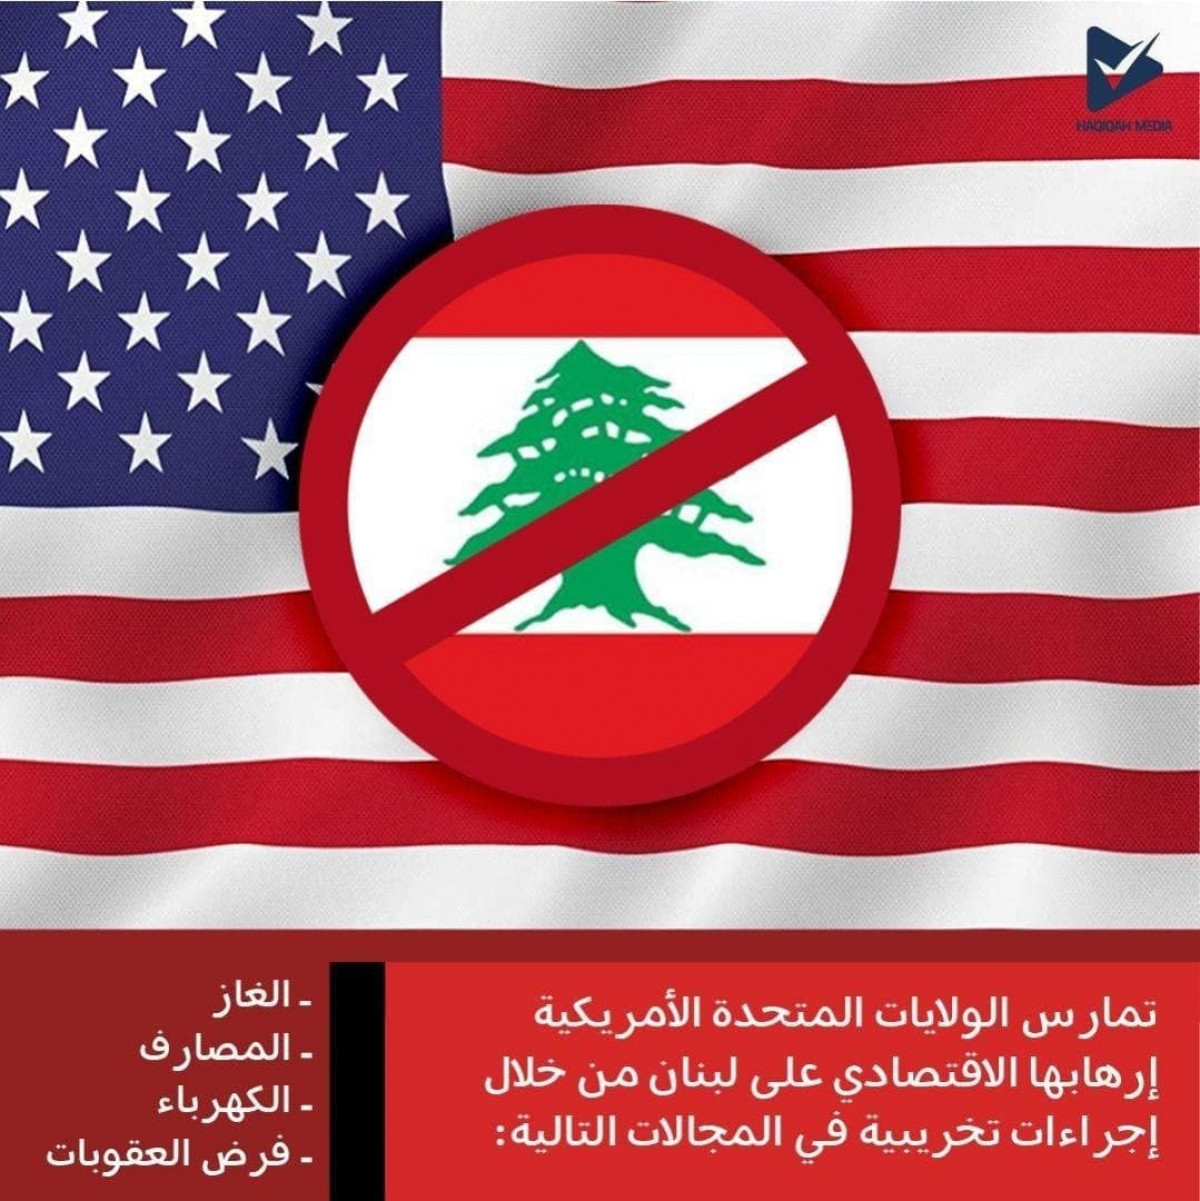 الإرهاب الإقتصادي الامريكي على لبنان